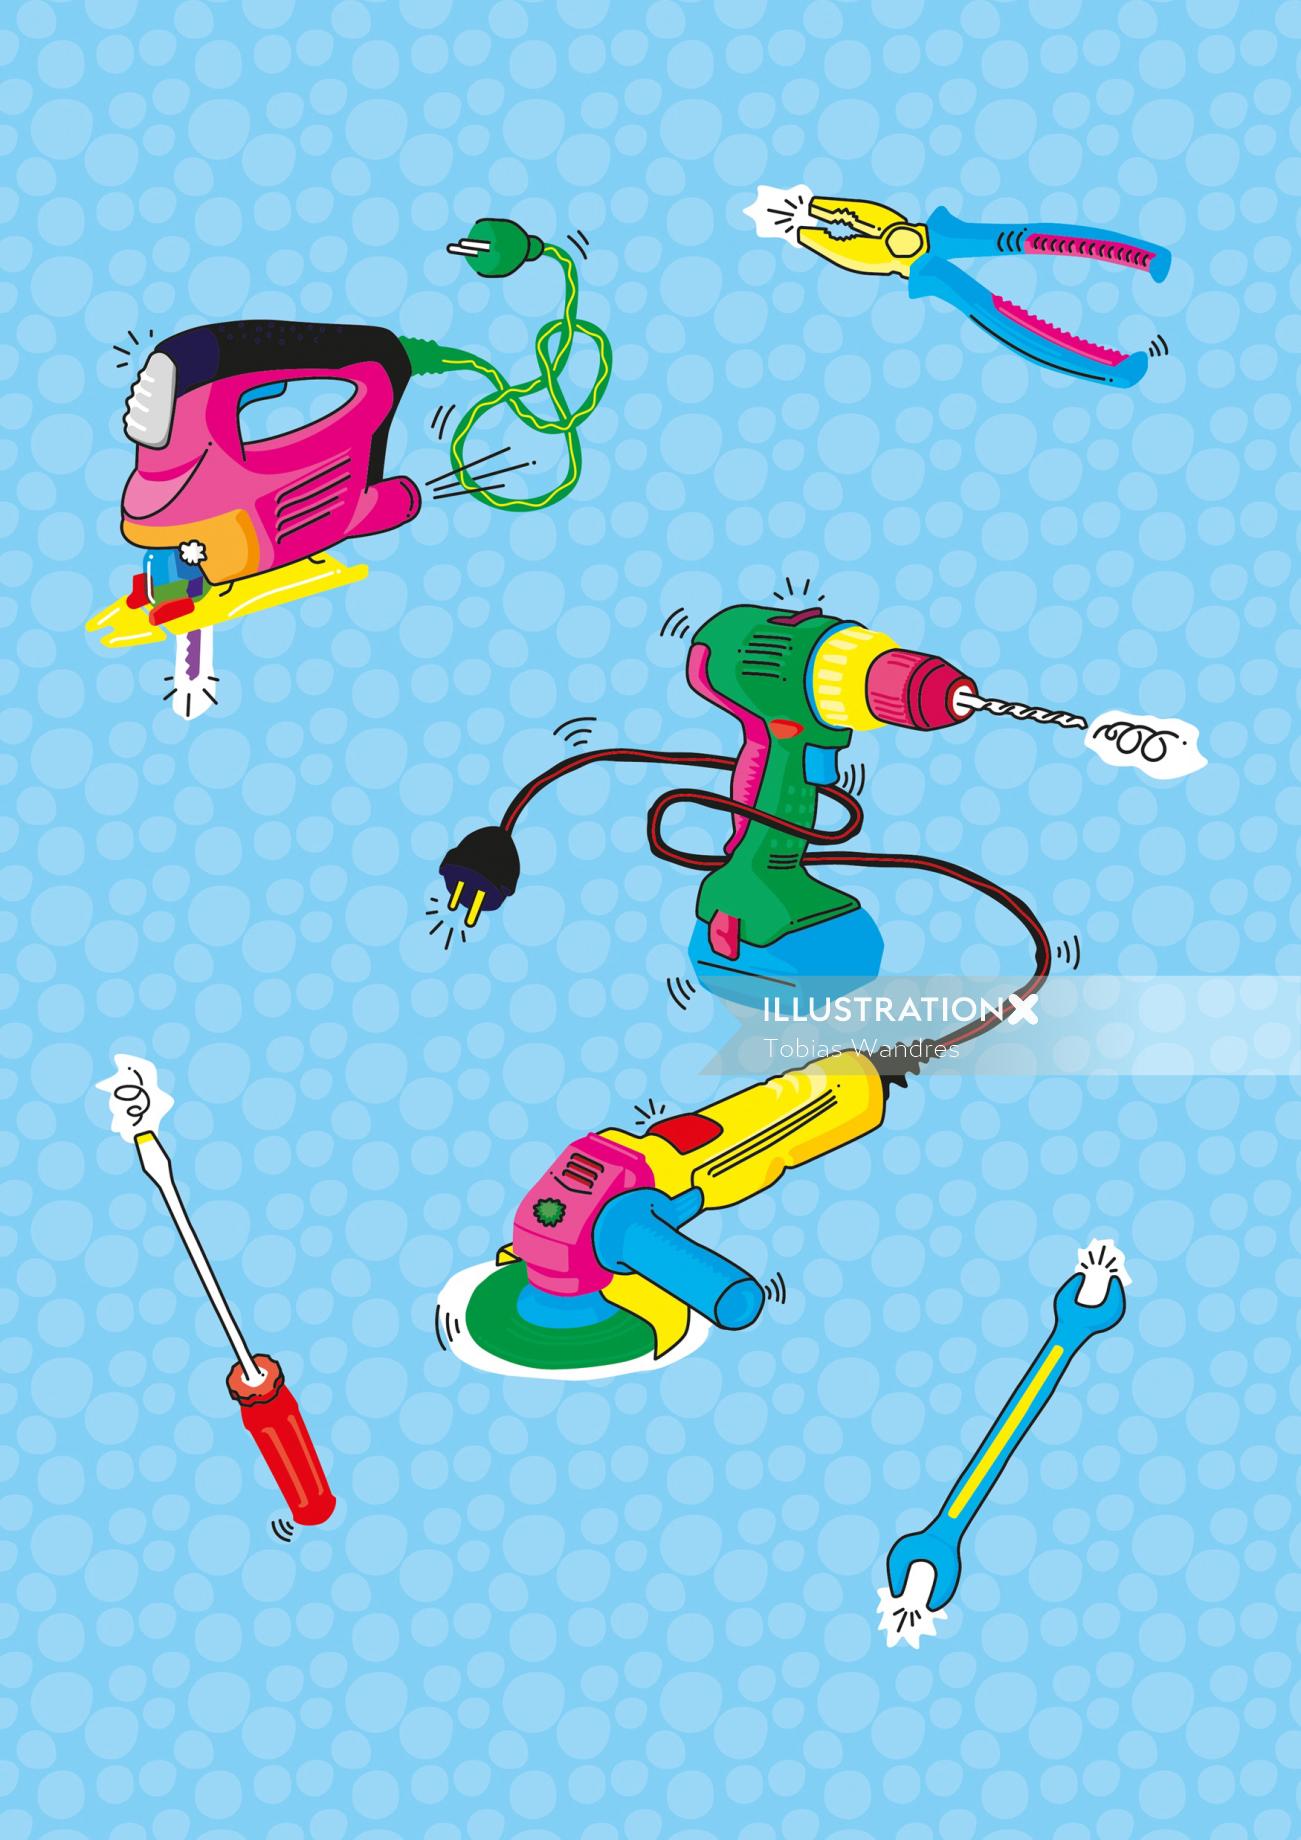 Diseño gráfico de los iconos de herramientas de maquinaria por Tobias Wandres